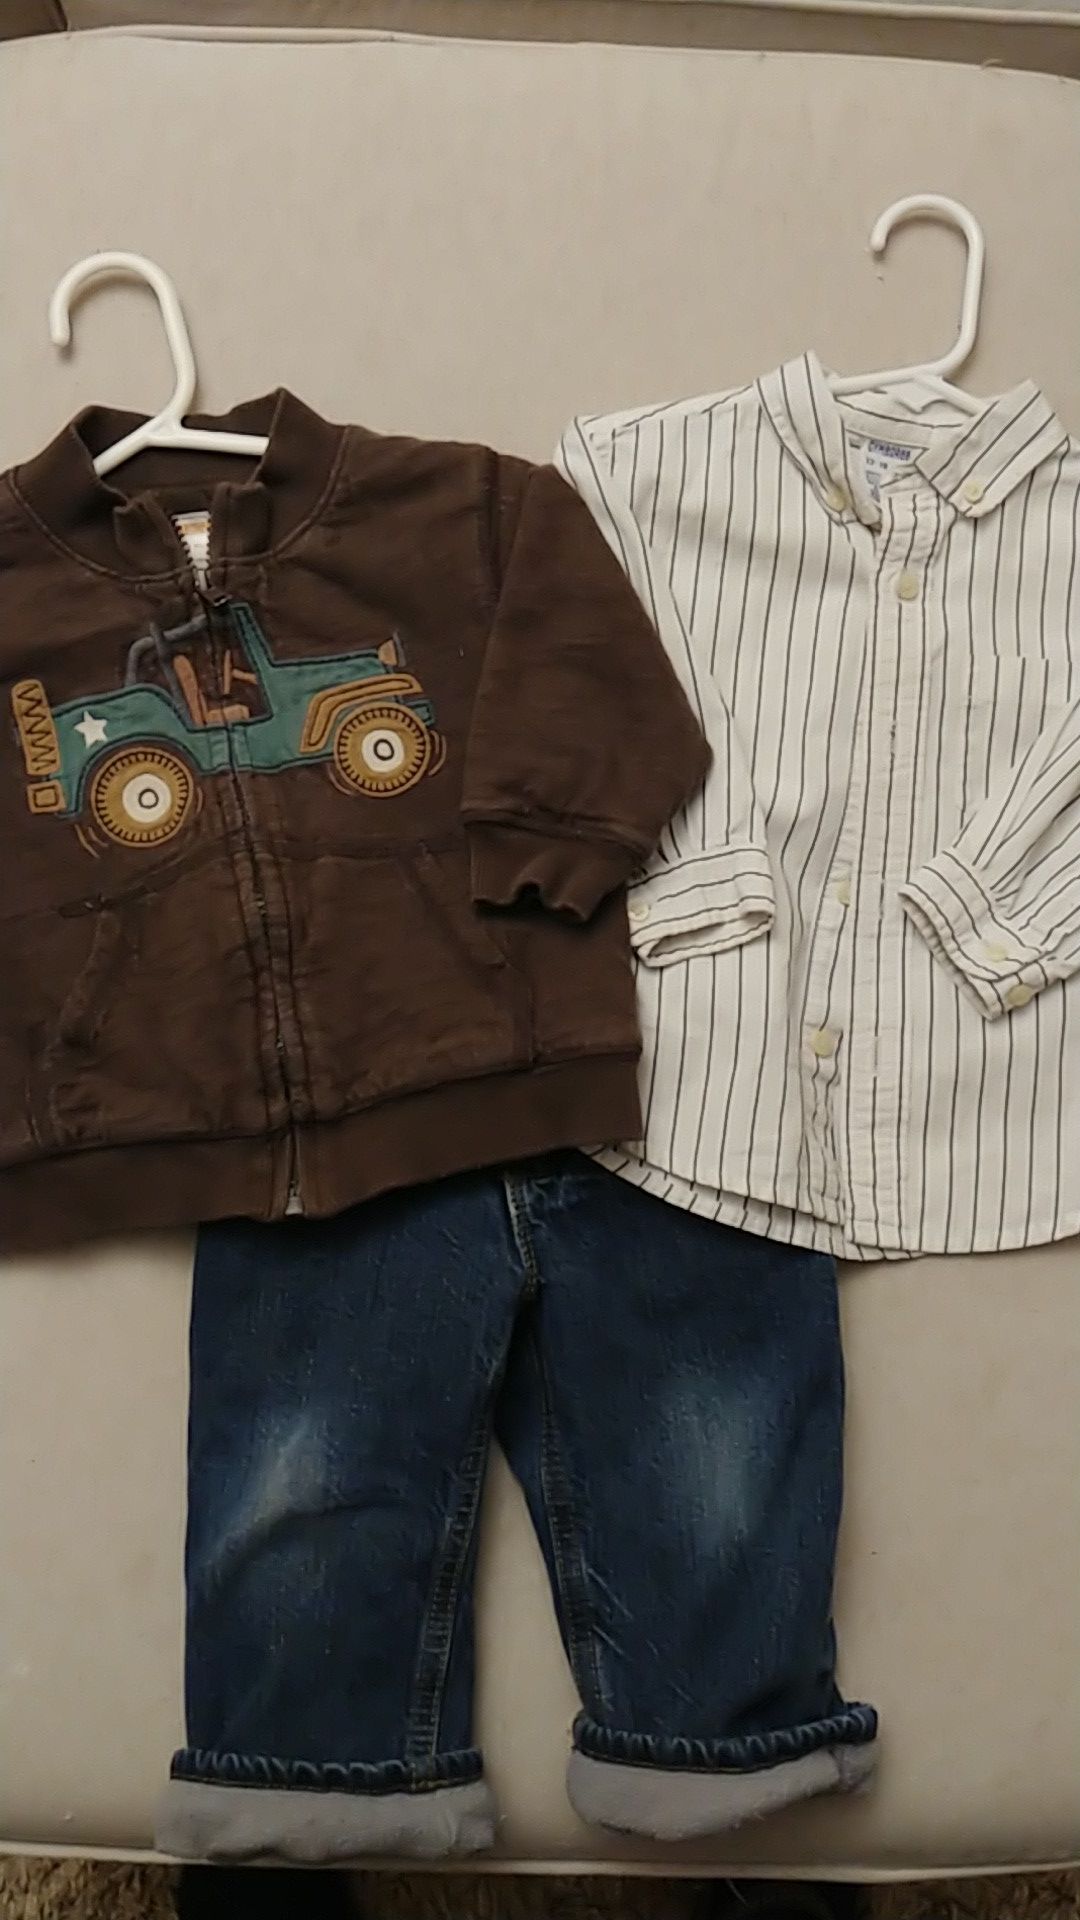 12-18 month boy clothes